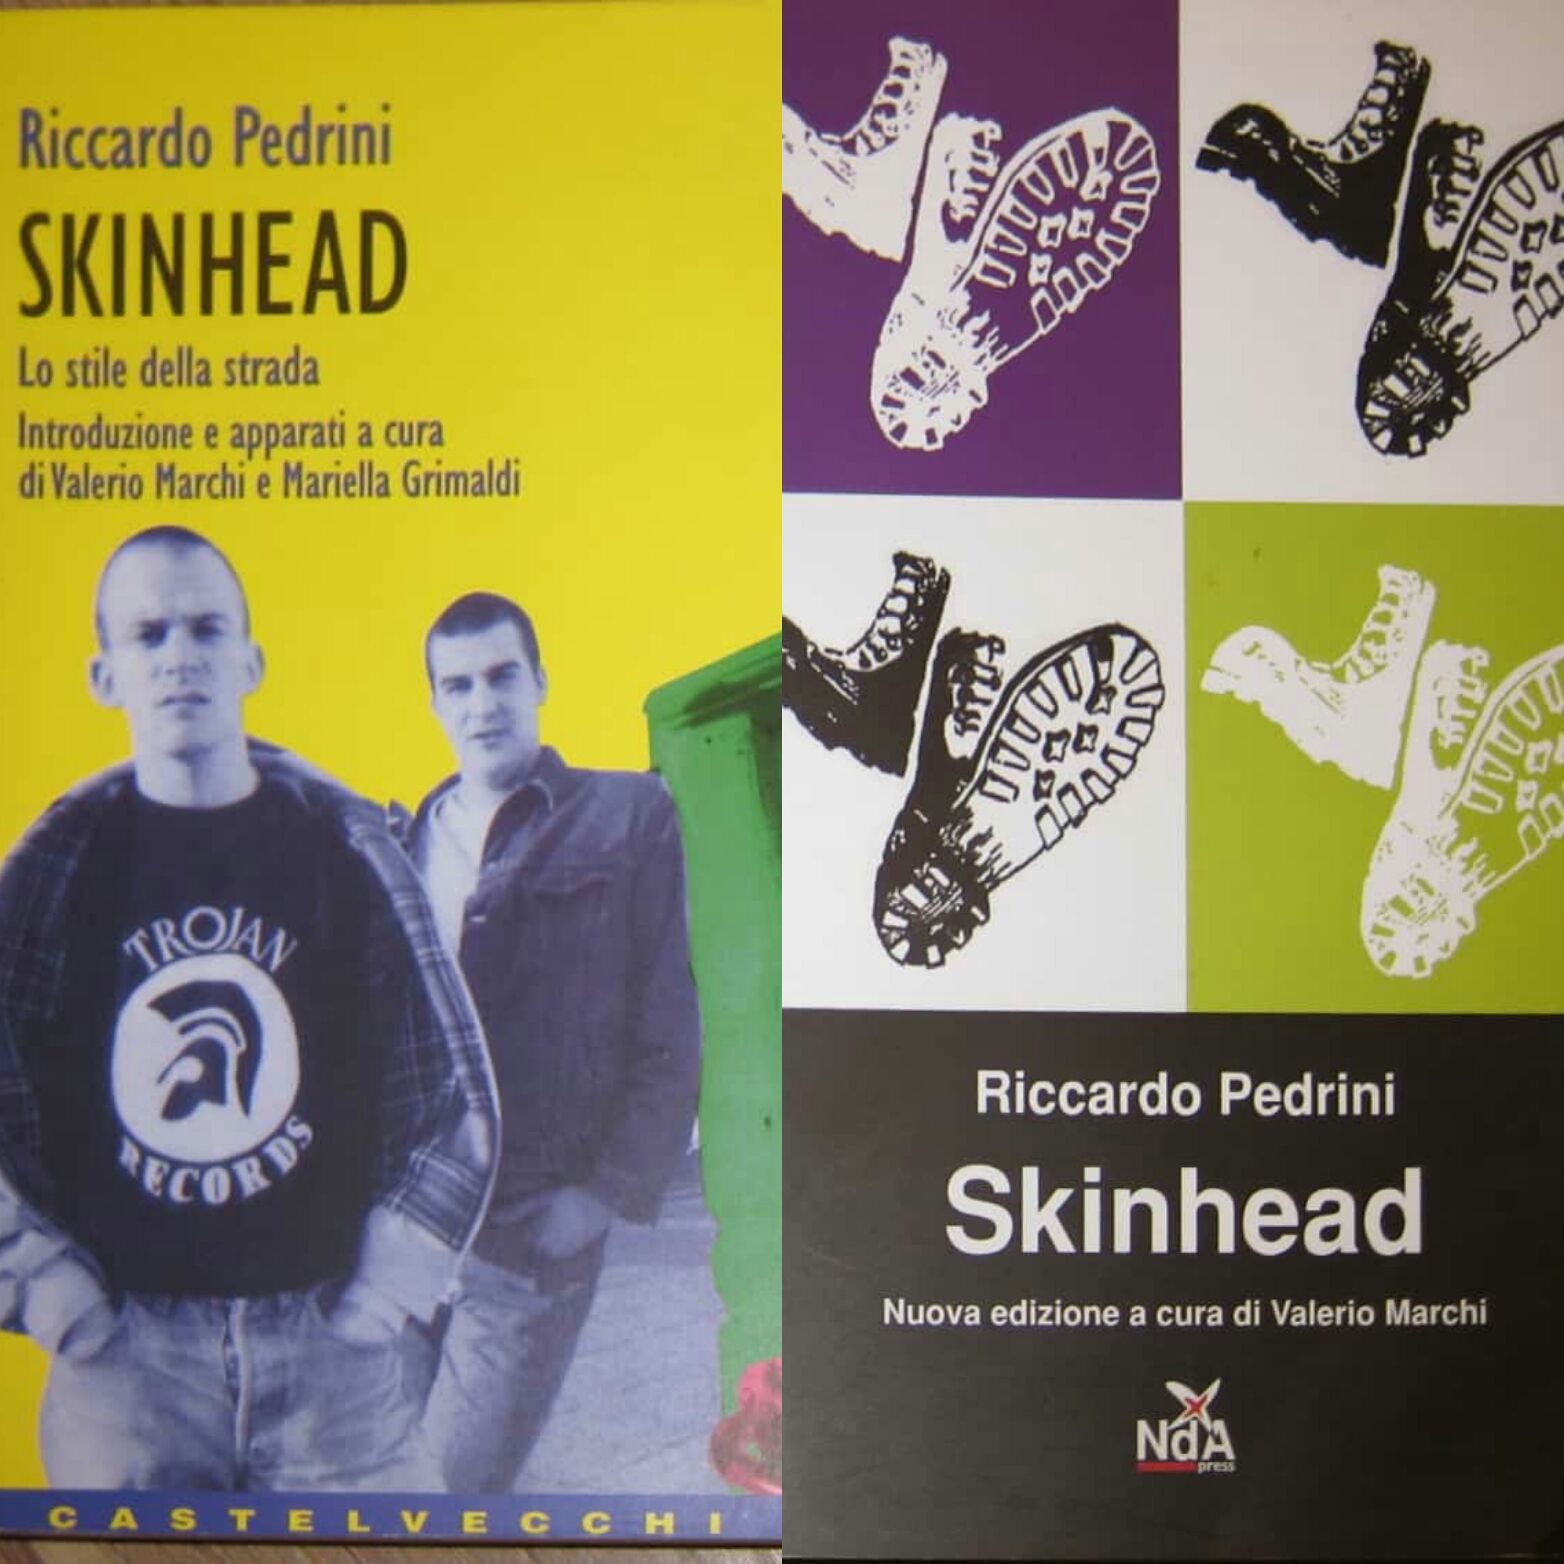 Il libro cult “Skinhead” di Riccardo Pedrini